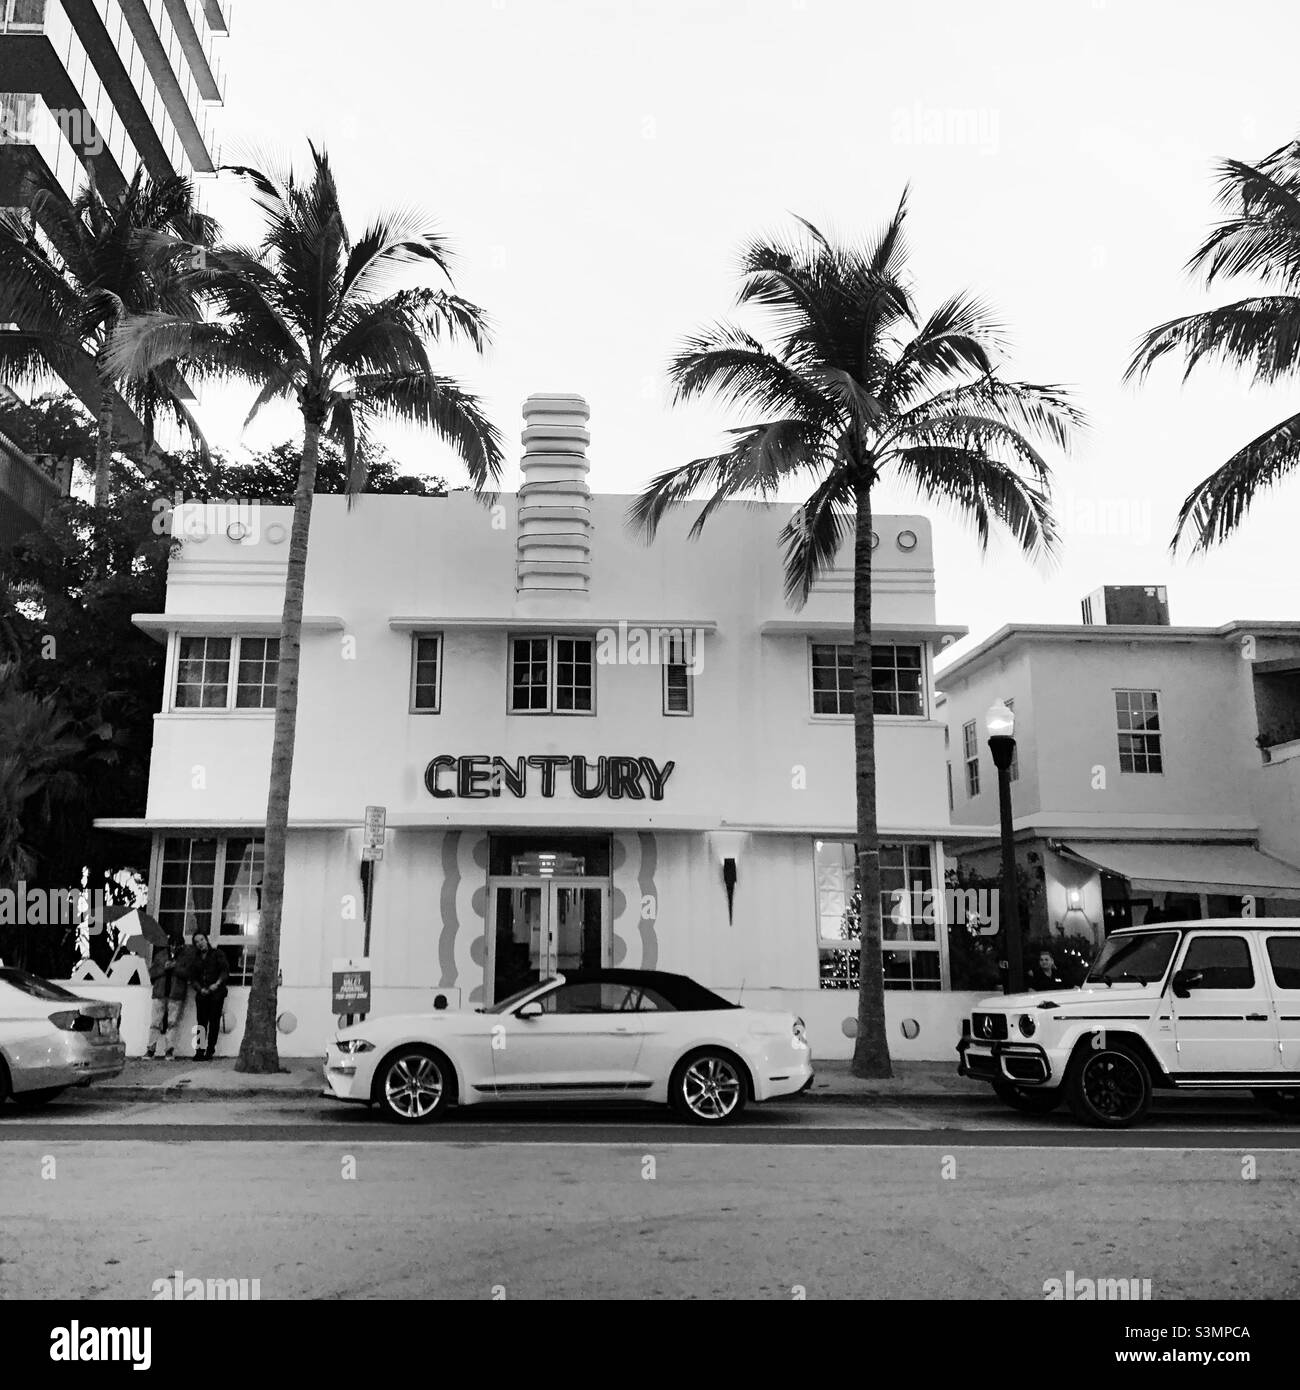 Décembre 2021, Century Hotel, Ocean Drive, au sud de Fifth,South Beach, Miami Beach, Floride, États-Unis, Amérique du Nord Banque D'Images